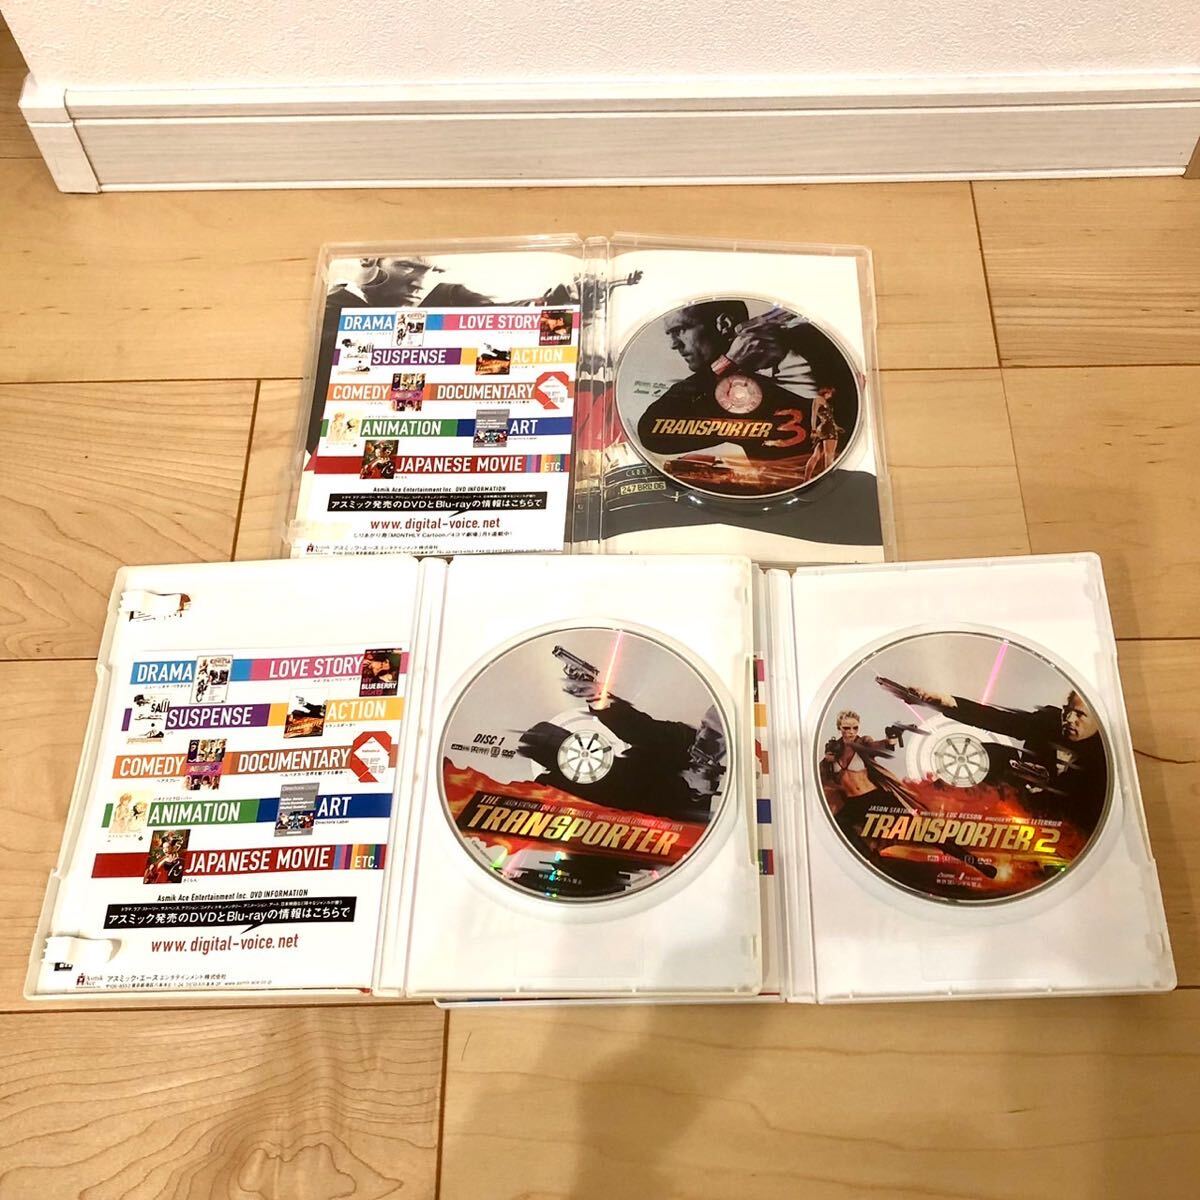 トランスポーター DVD セット販売 Vol. 1 2 3 ジェイスン・ステイサム スー・チー マット・シュルツ 動作確認済 送料無料 E3 の画像3